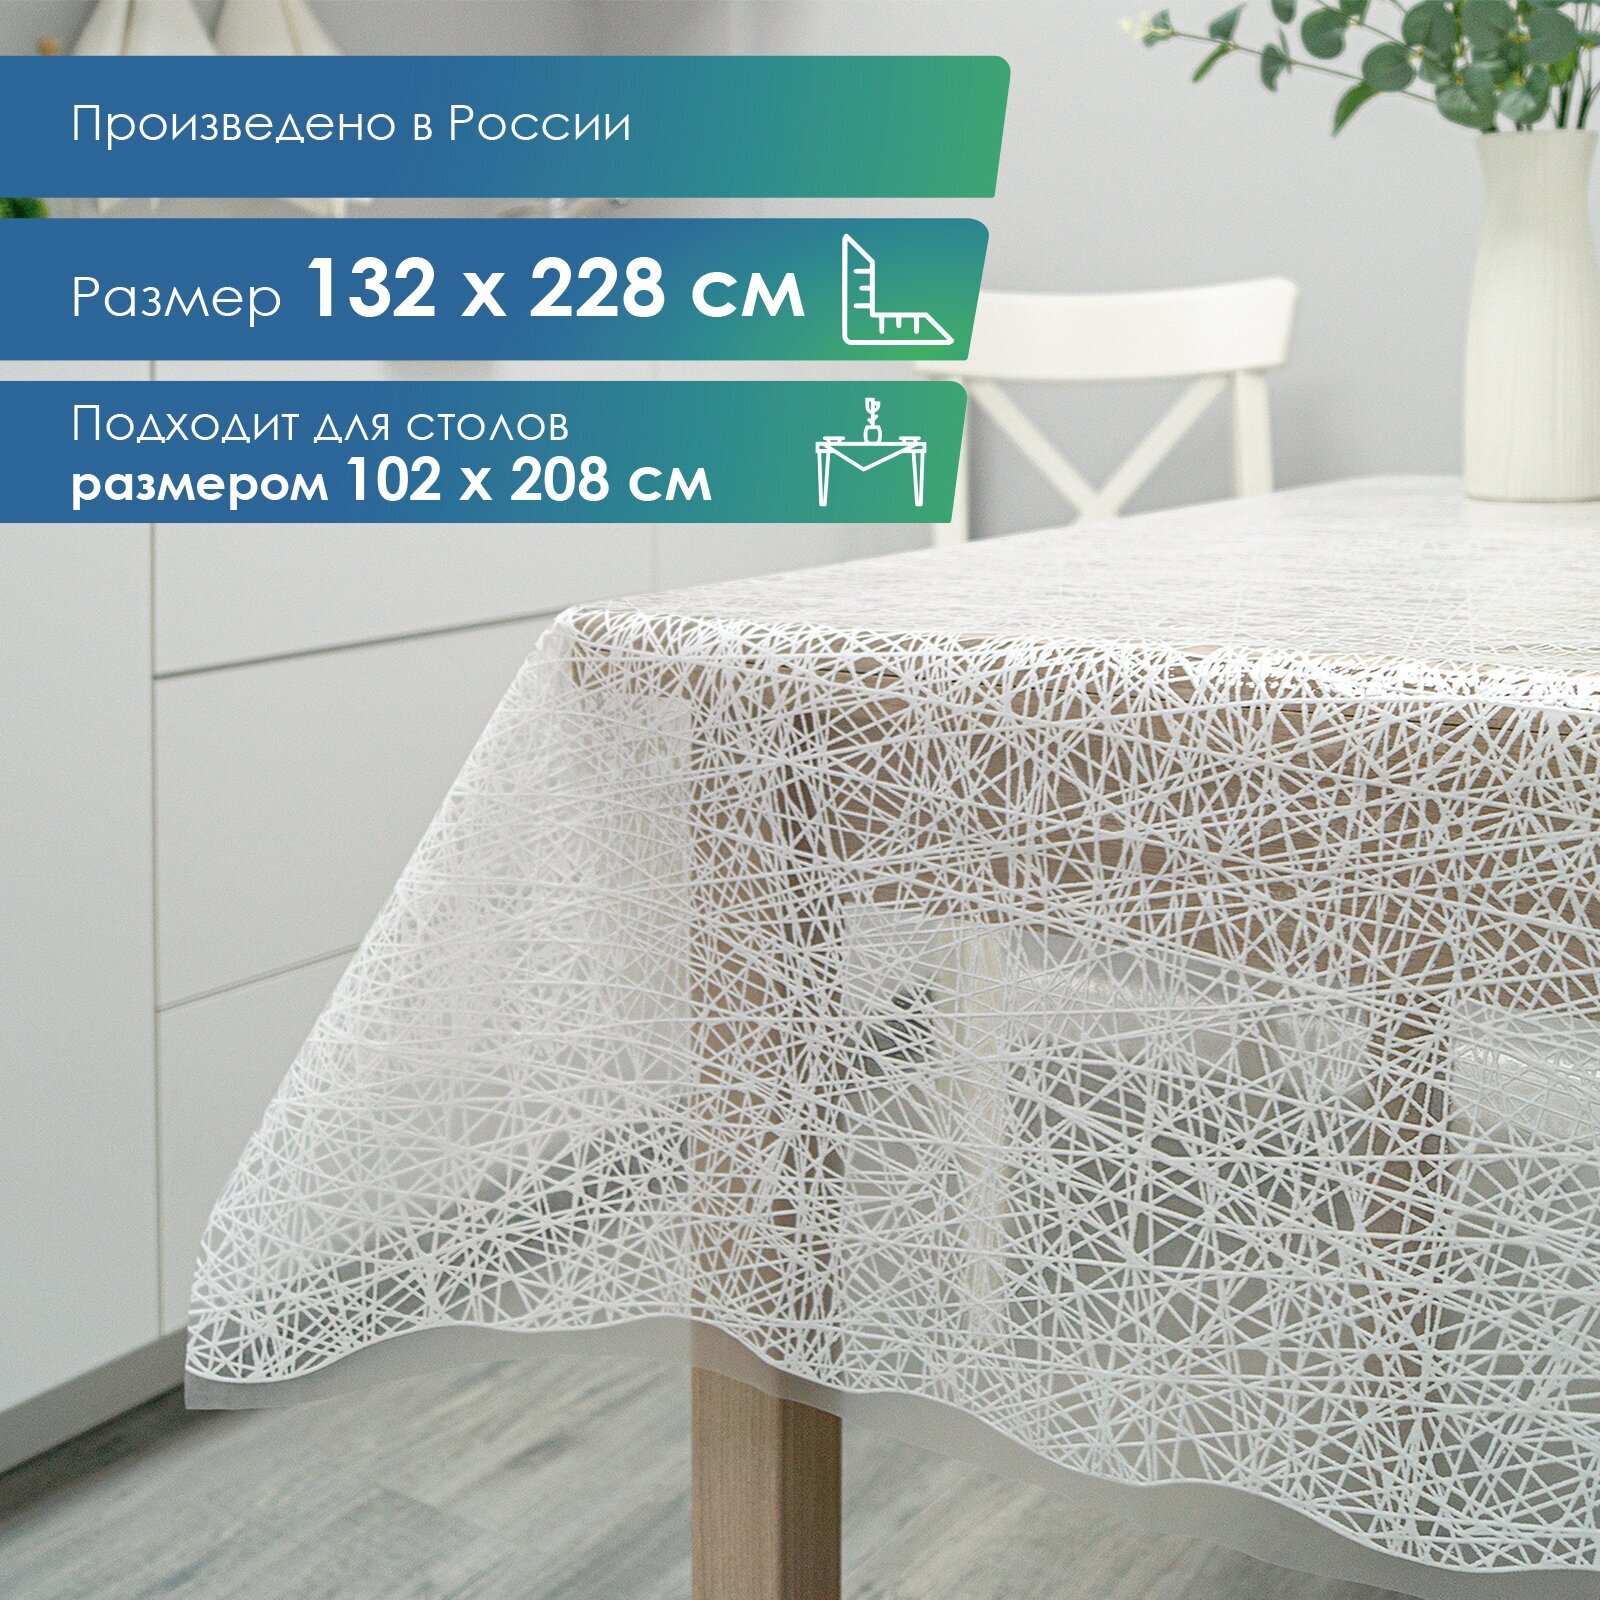 Скатерть клеенка столовая VILINA "Муза" прямоугольная водонепроницаемая на стол для кухни132х228 см.